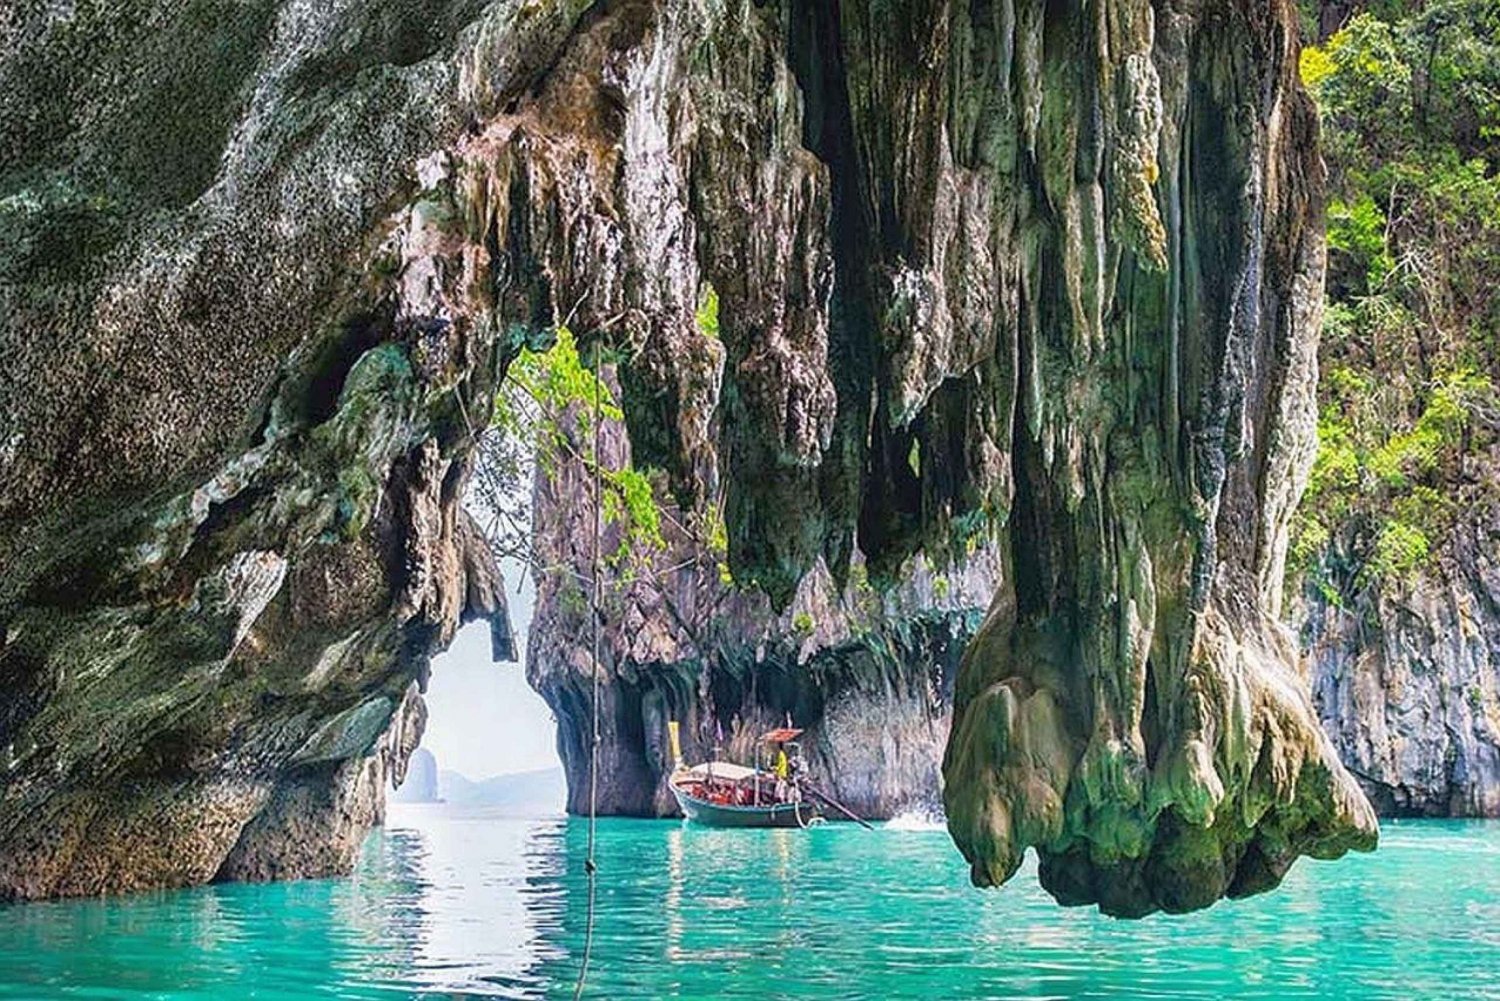 Phuketista: James Bond Sunset & Canoe Adventure Tour